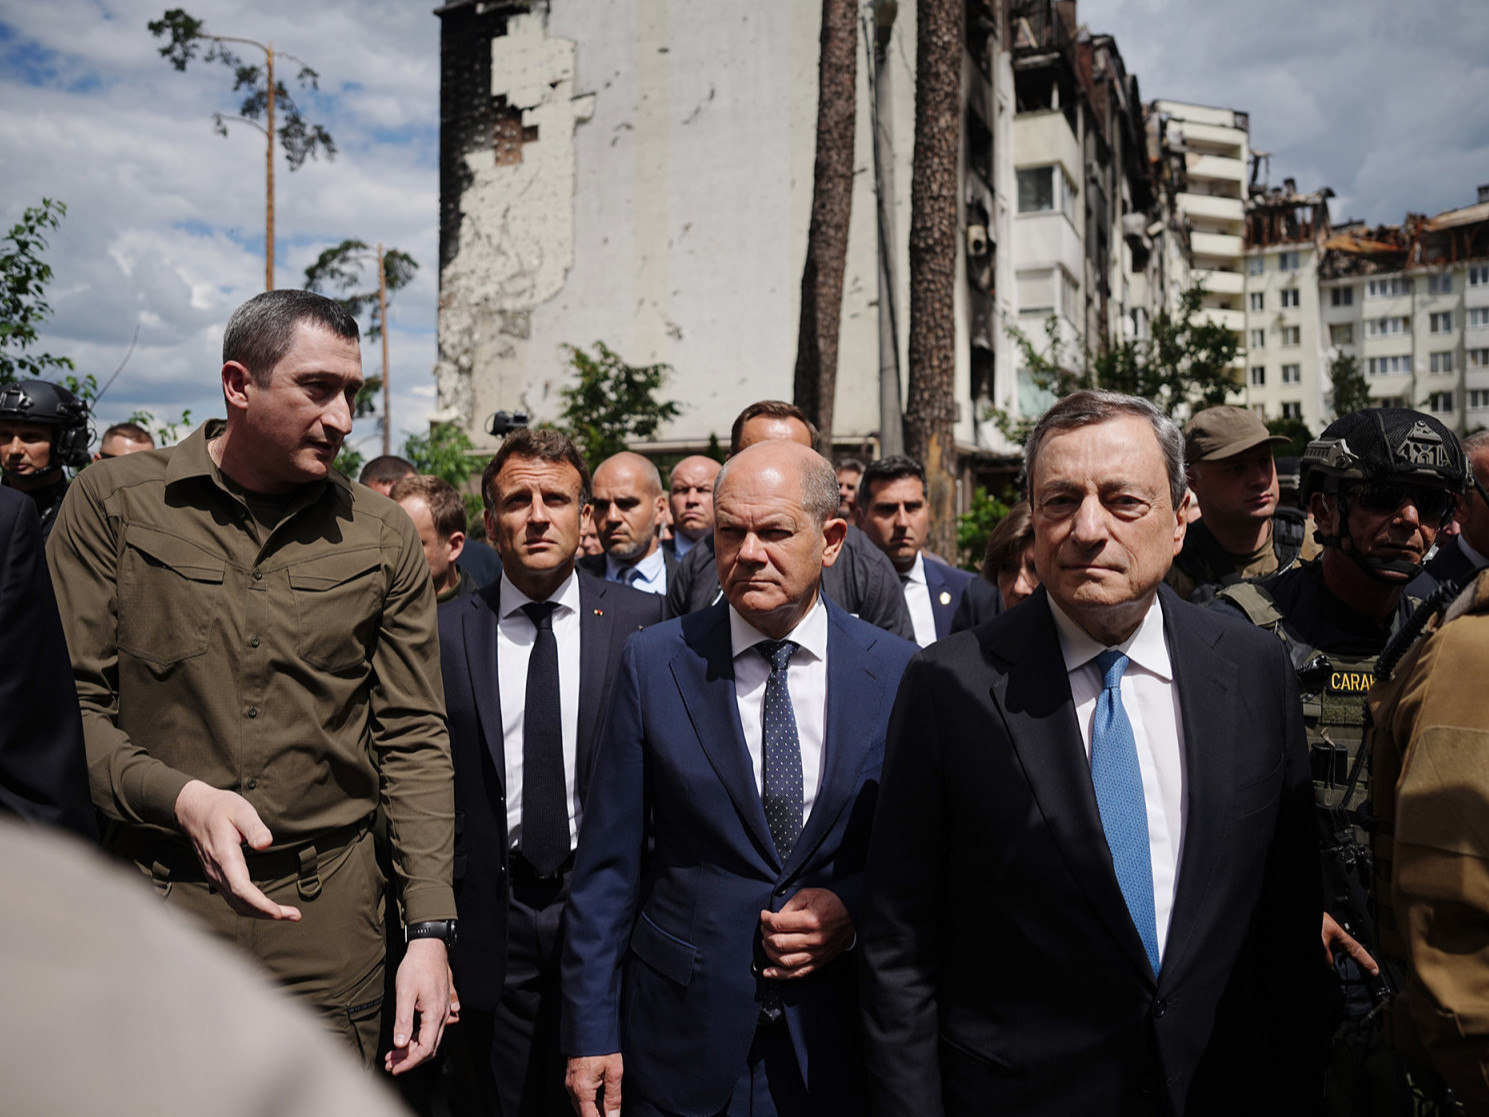 Европын гурван орны удирдагч Оросын халдлагад өртсөн Ирпин хотод очжээ